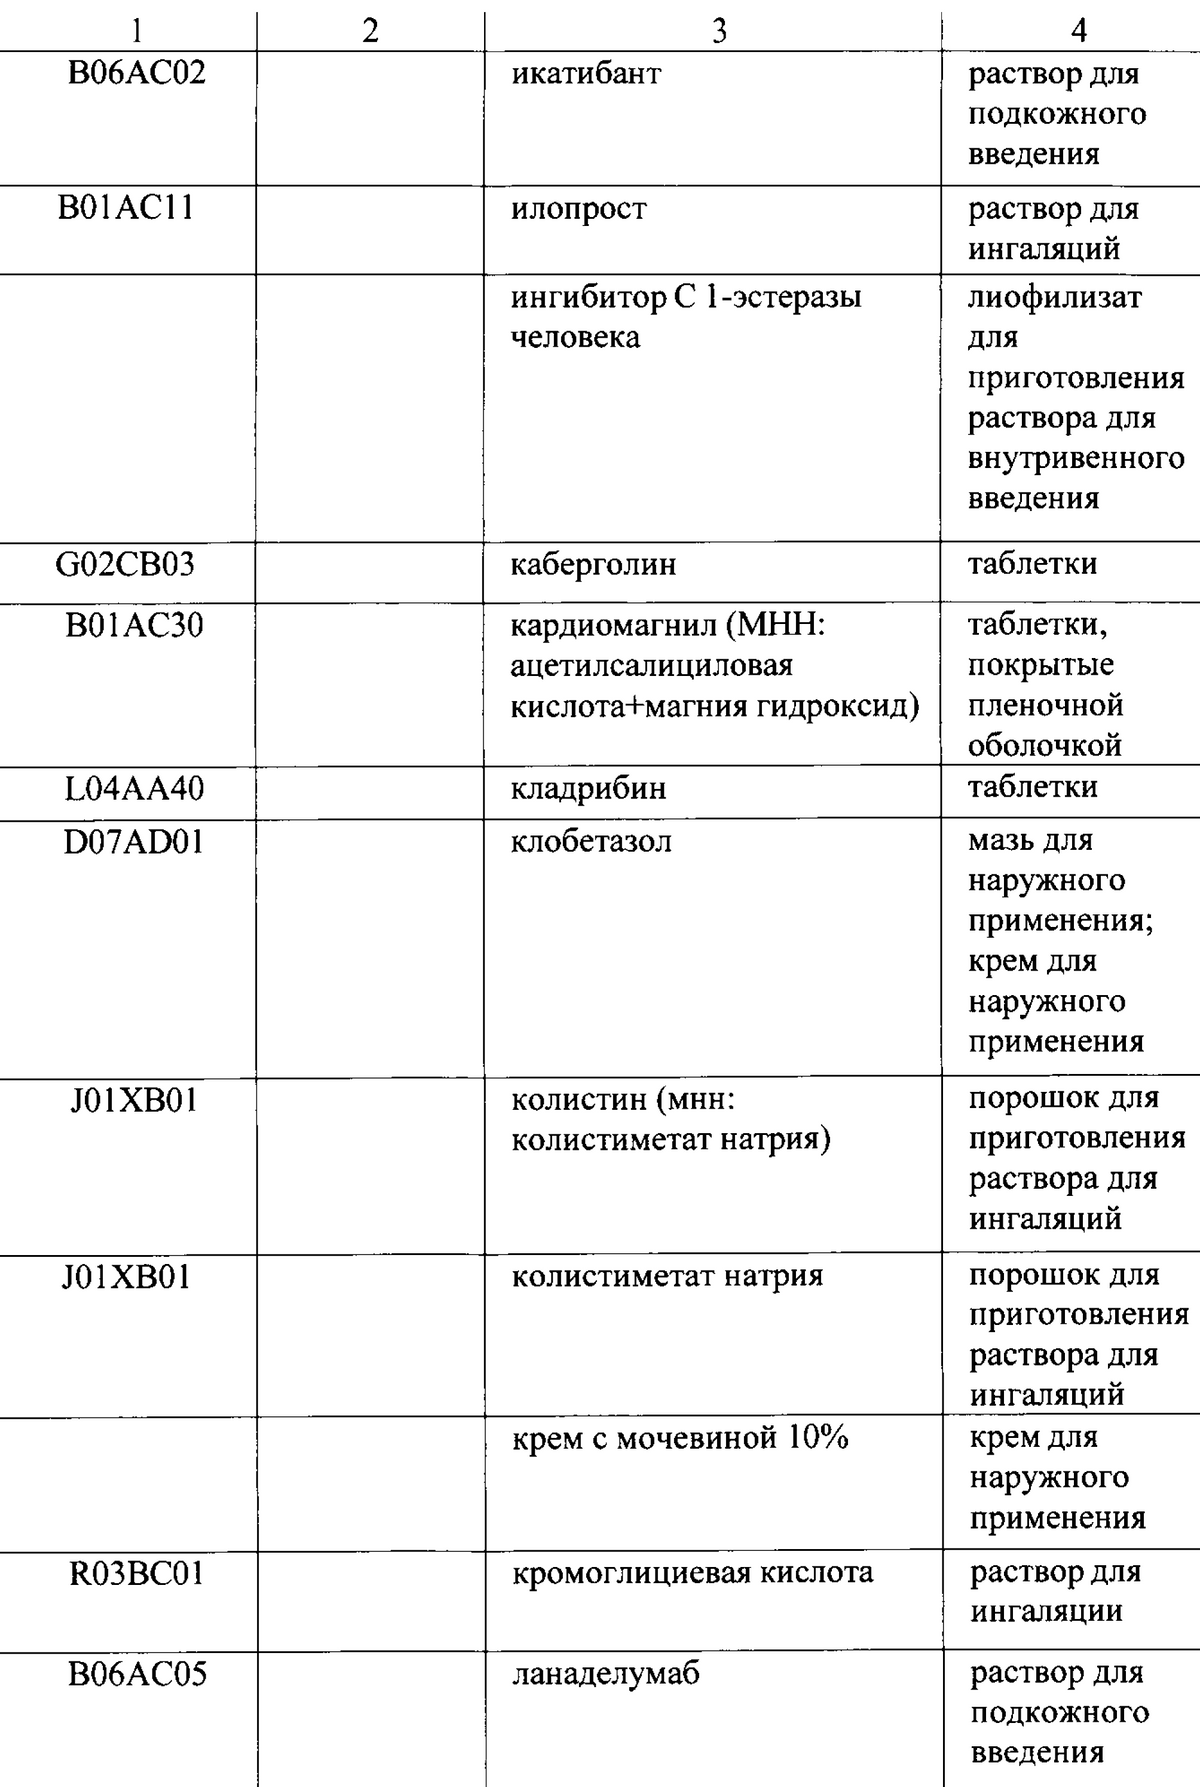 Так выглядит часть списка лекарств в приложении к территориальной программе государственных гарантий Республики Башкортостан. Источник: официальный интернет-портал правовой информации республики Башкортостан